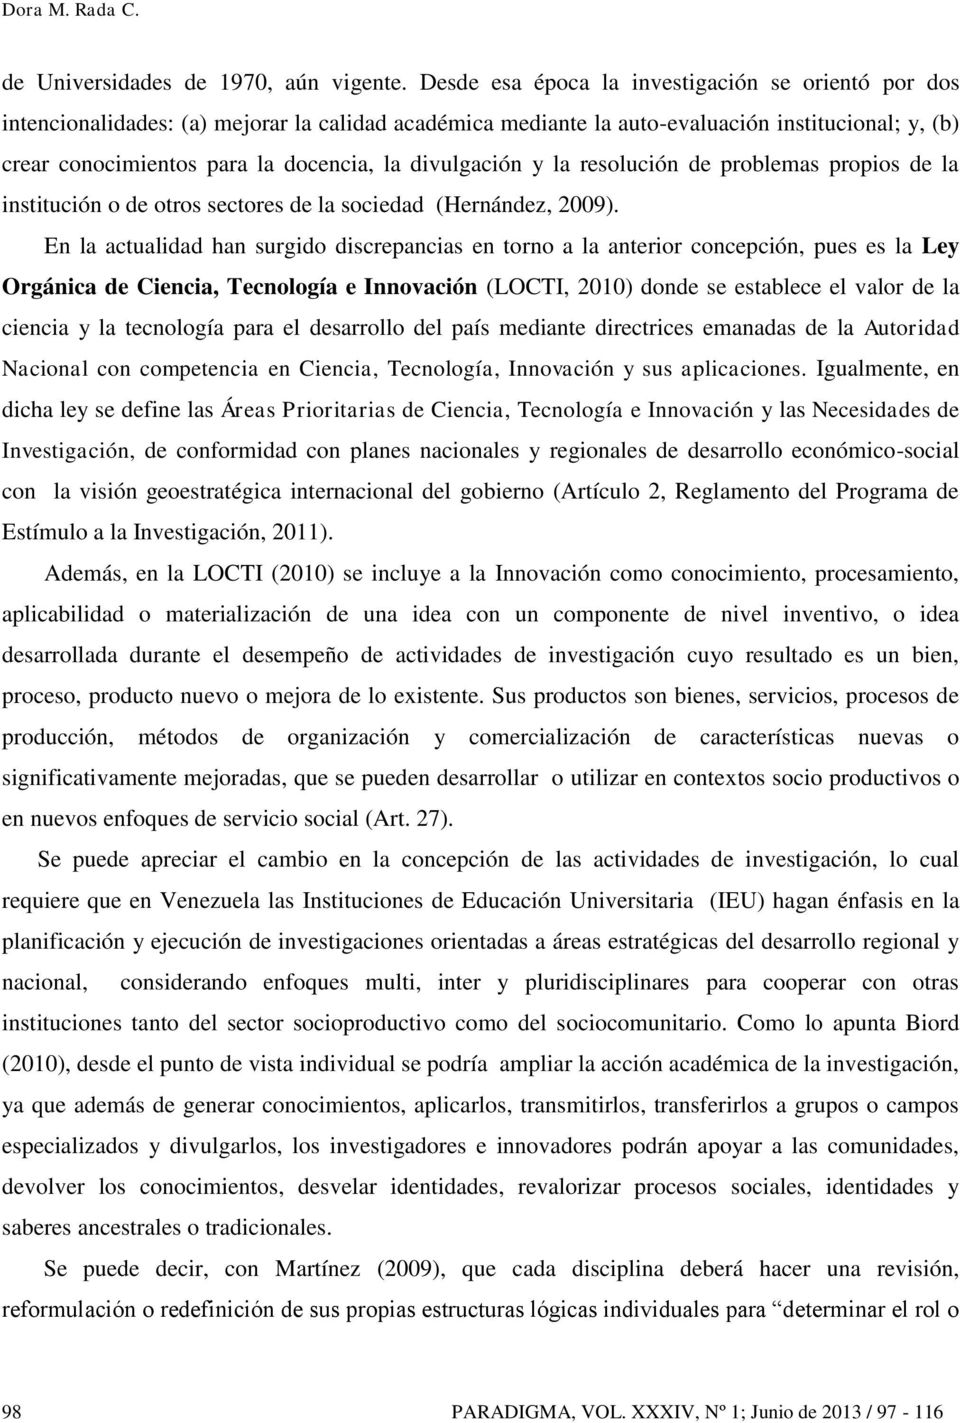 divulgación y la resolución de problemas propios de la institución o de otros sectores de la sociedad (Hernández, 2009).